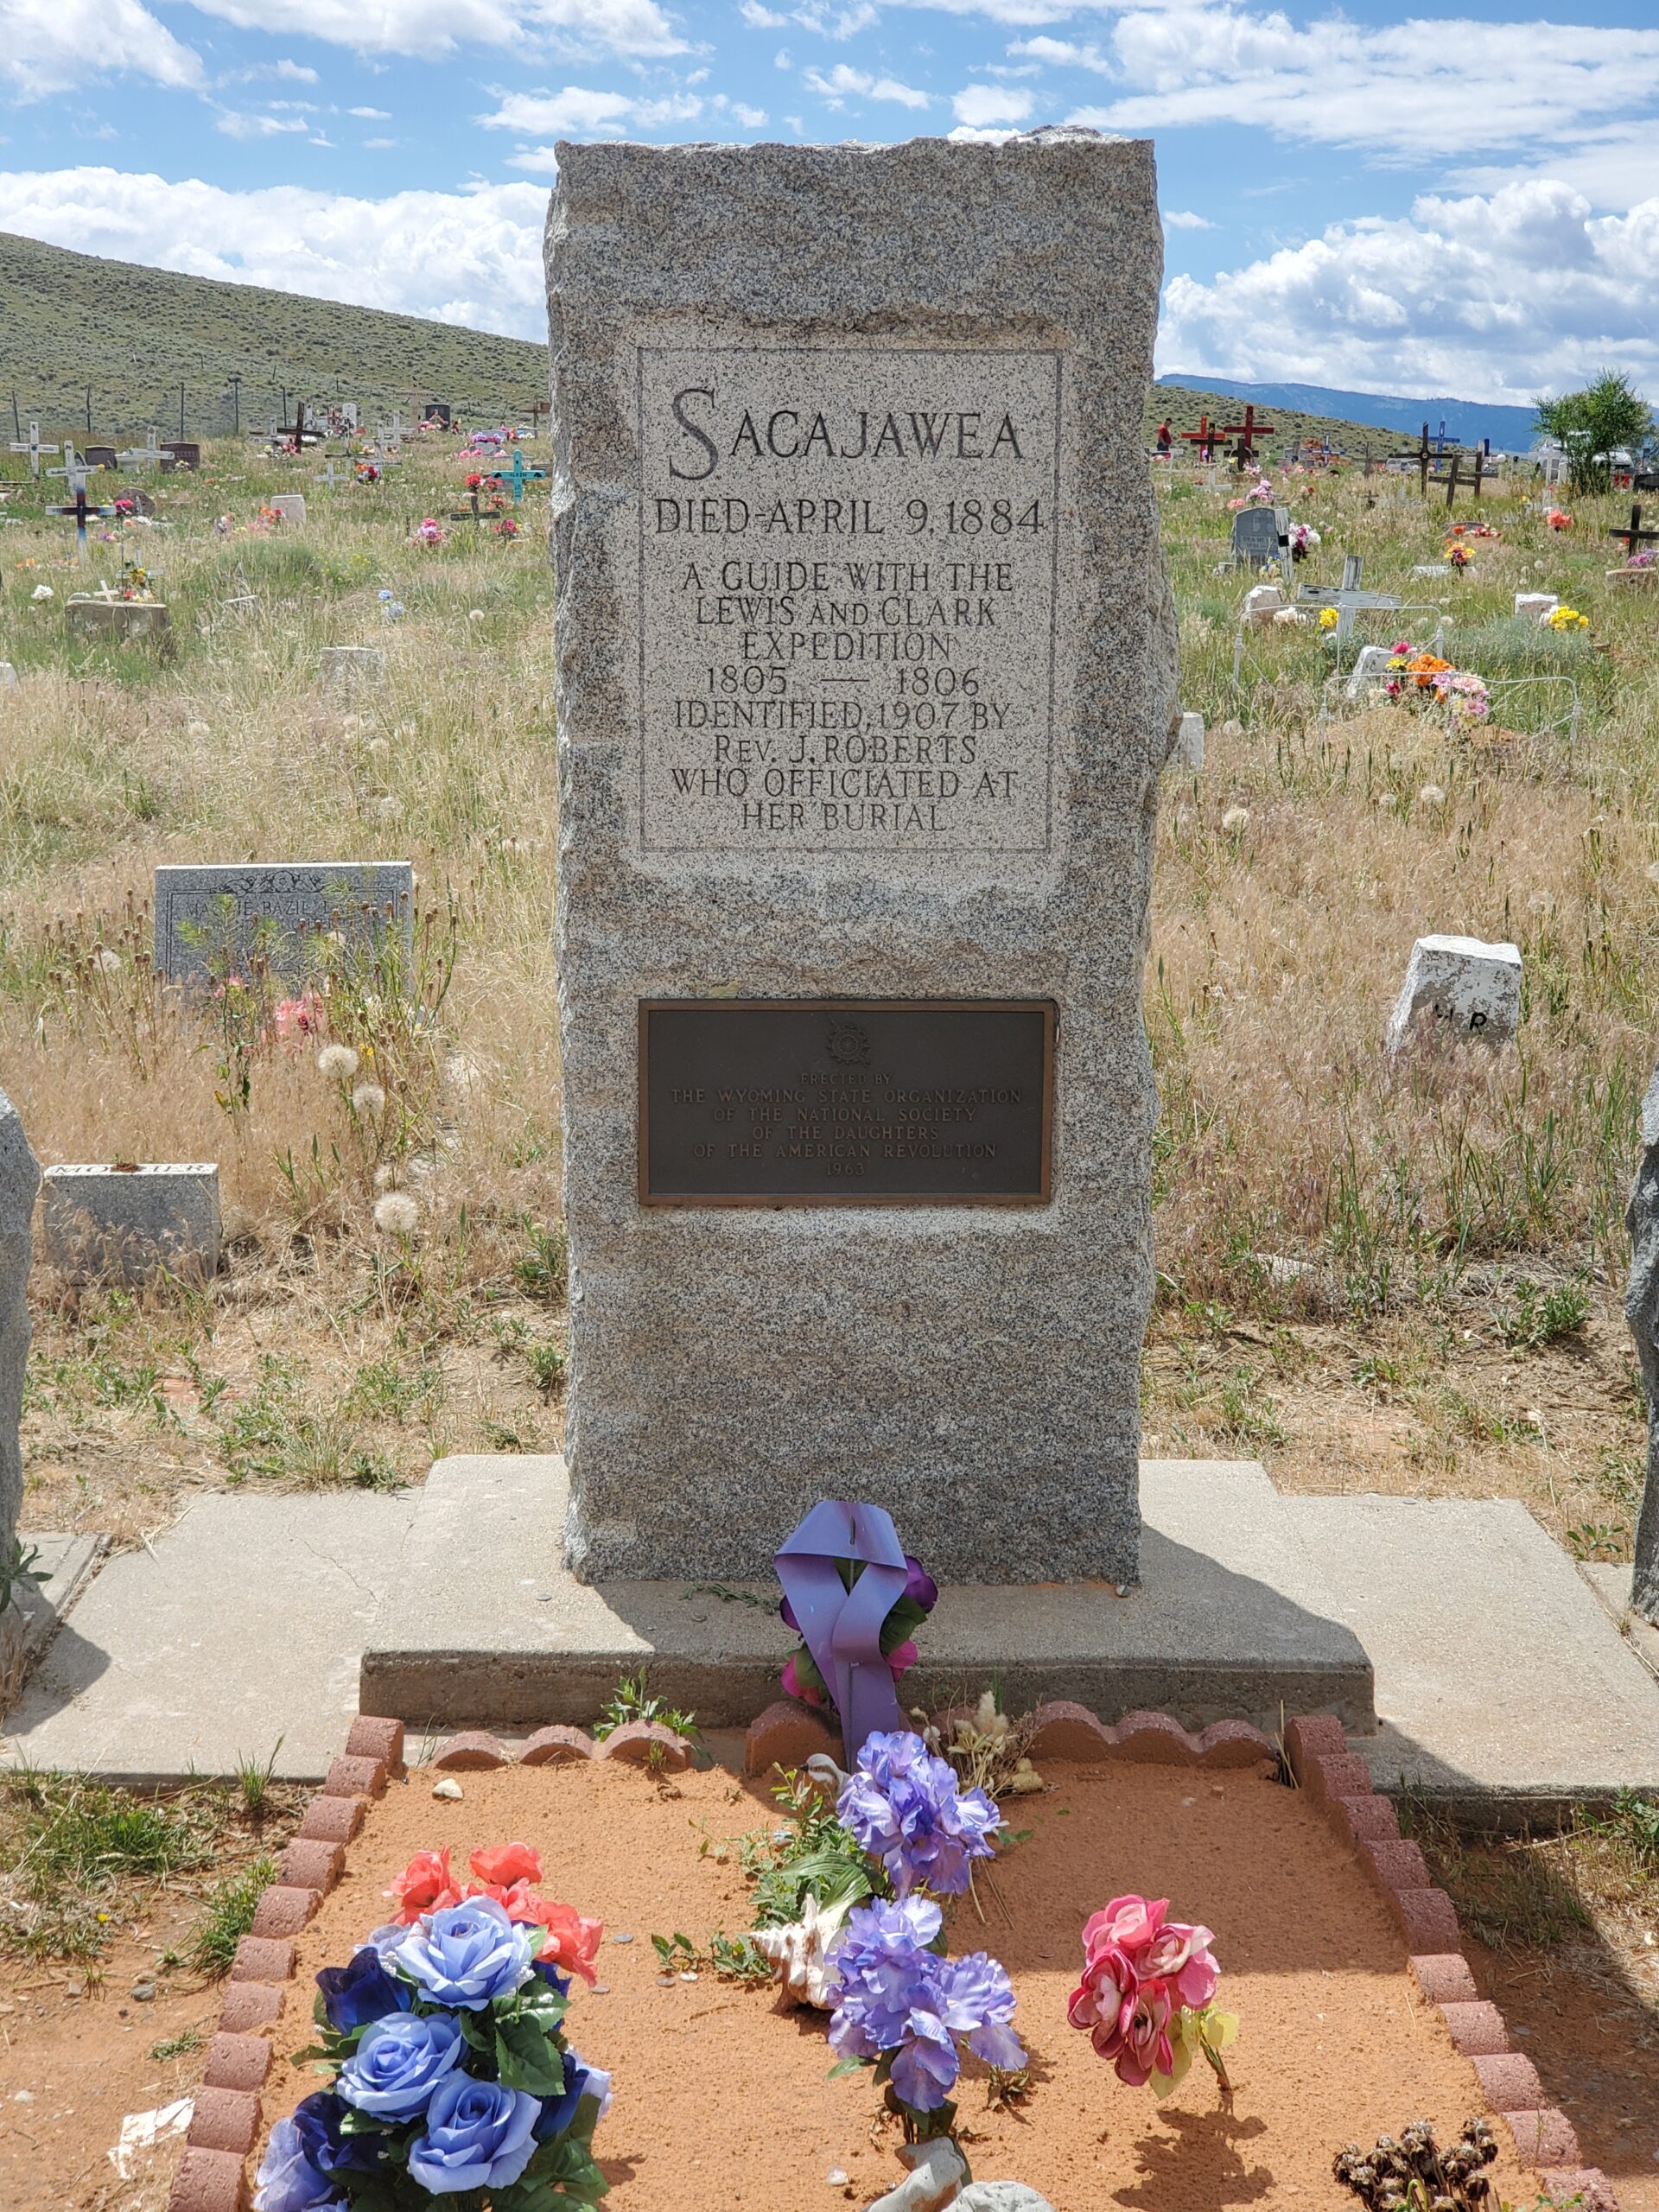 The monument to Sacagawea